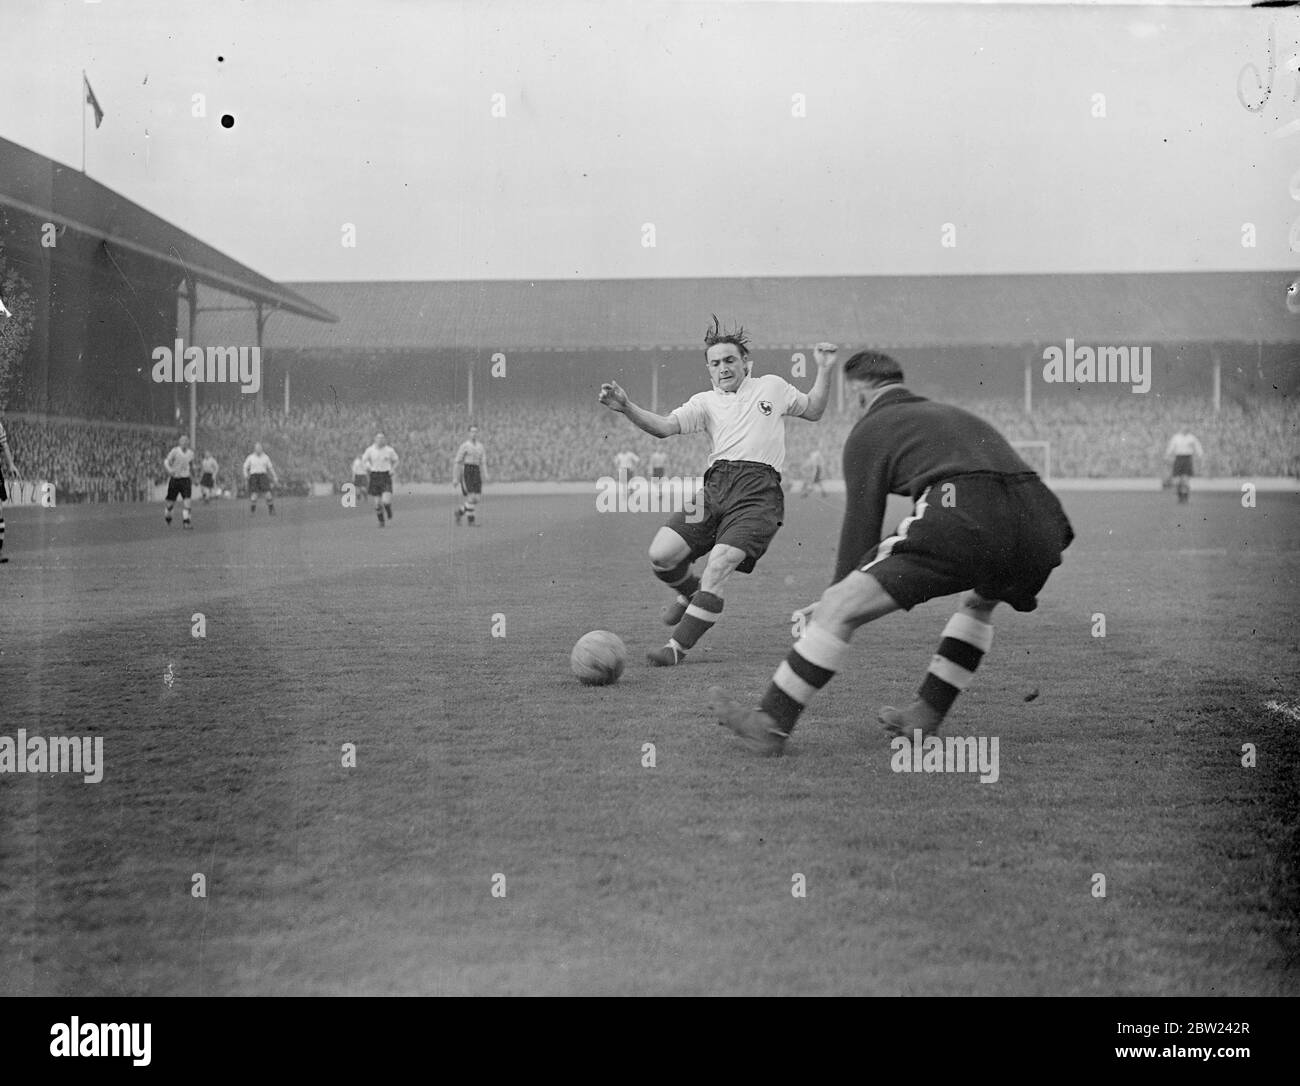 Tottenham Hotspur a rencontré Fulham dans un match de deuxième division de Londres à White Hart Lane. Photos: Turner, le gardien de but Fulham gagne juste la course pour le ballon avec A.E.Hall, les Spurs à l'intérieur à gauche. 15 octobre 1938 Banque D'Images